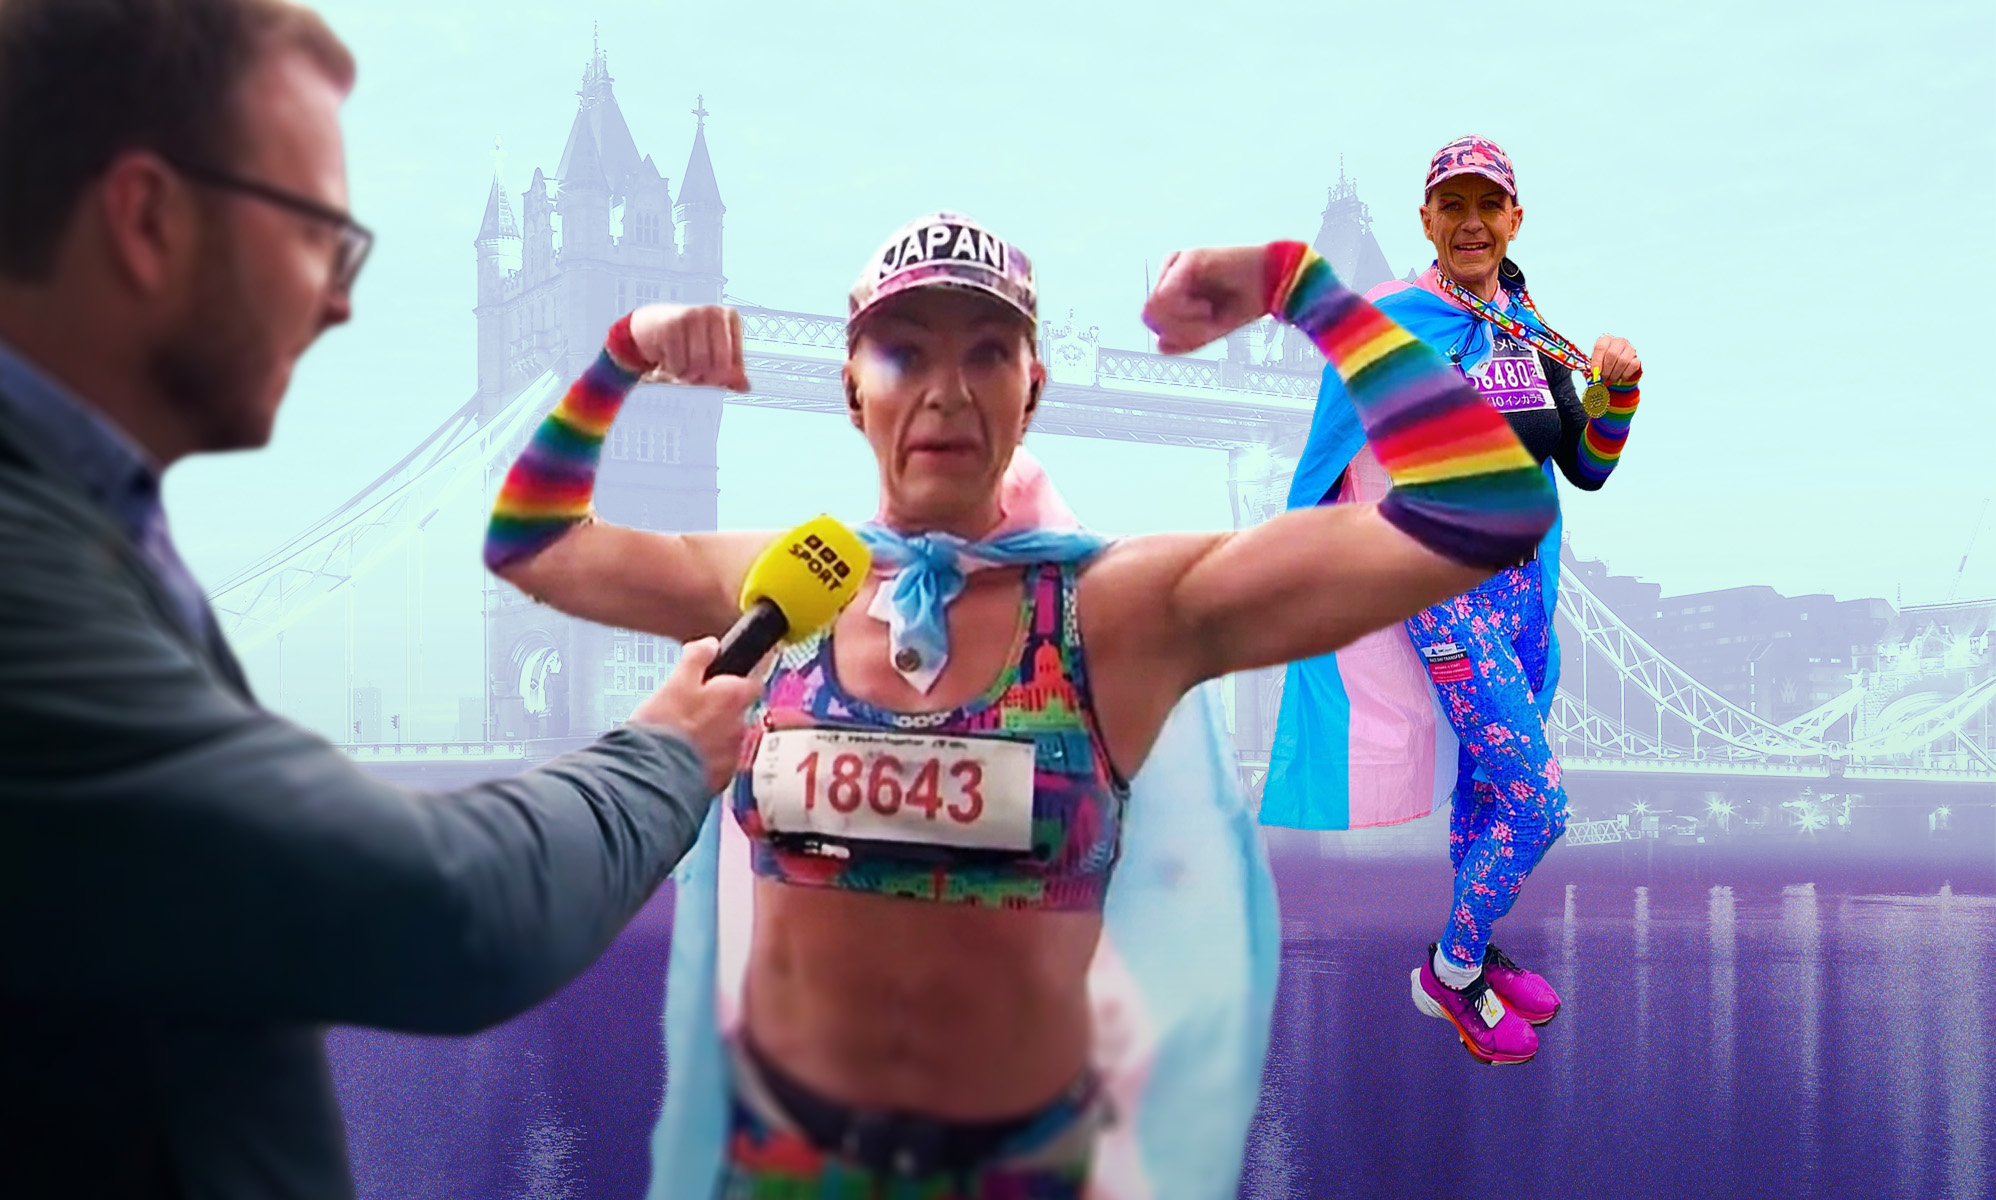 Acusan a una mujer trans por correr en una maratón de mujeres "de verdad"